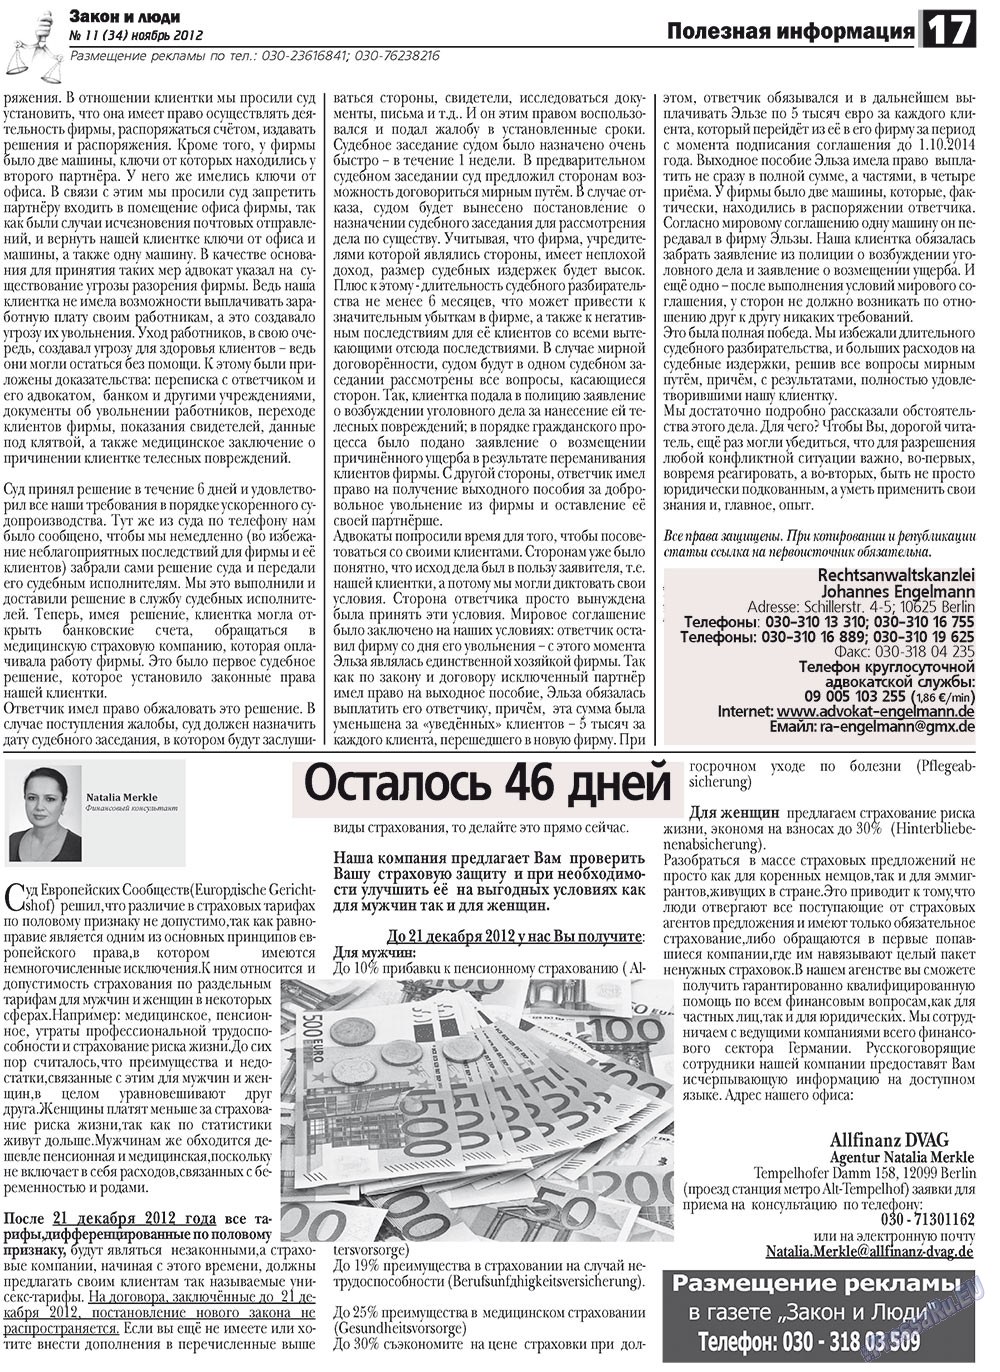 Закон и люди, газета. 2012 №11 стр.17